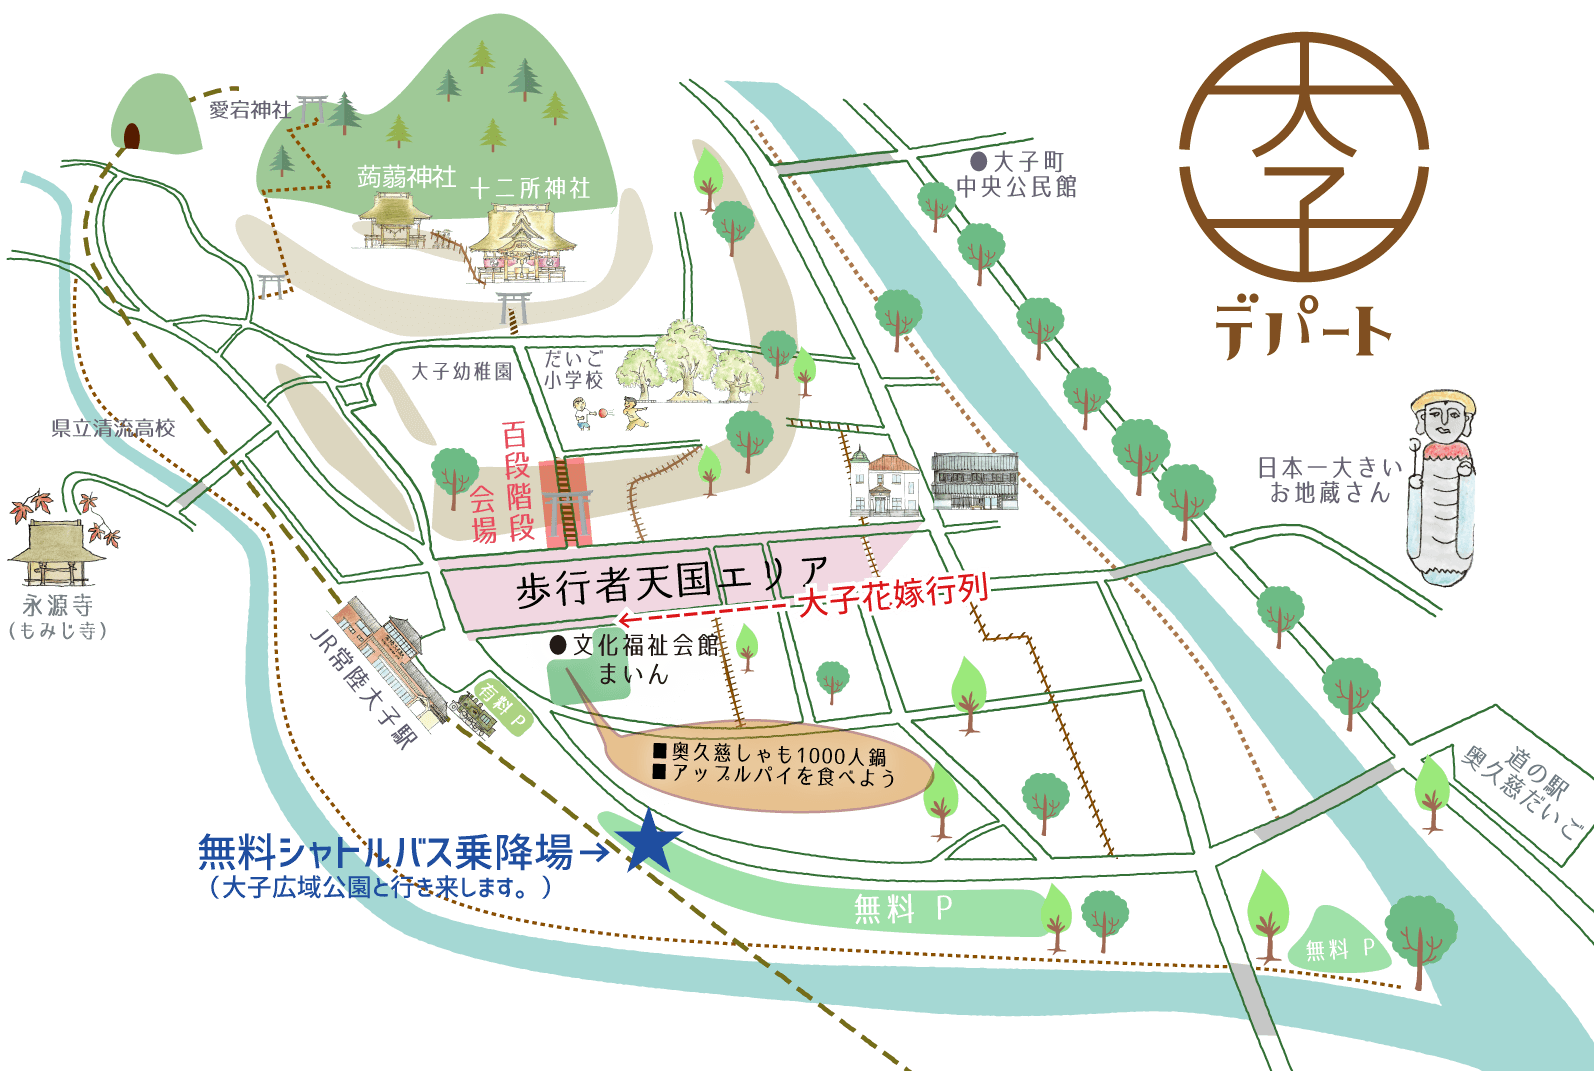 茨城・大子の昭和レトロな商店街「大子デパート」。百段階段でひなまつりの会場マップ。